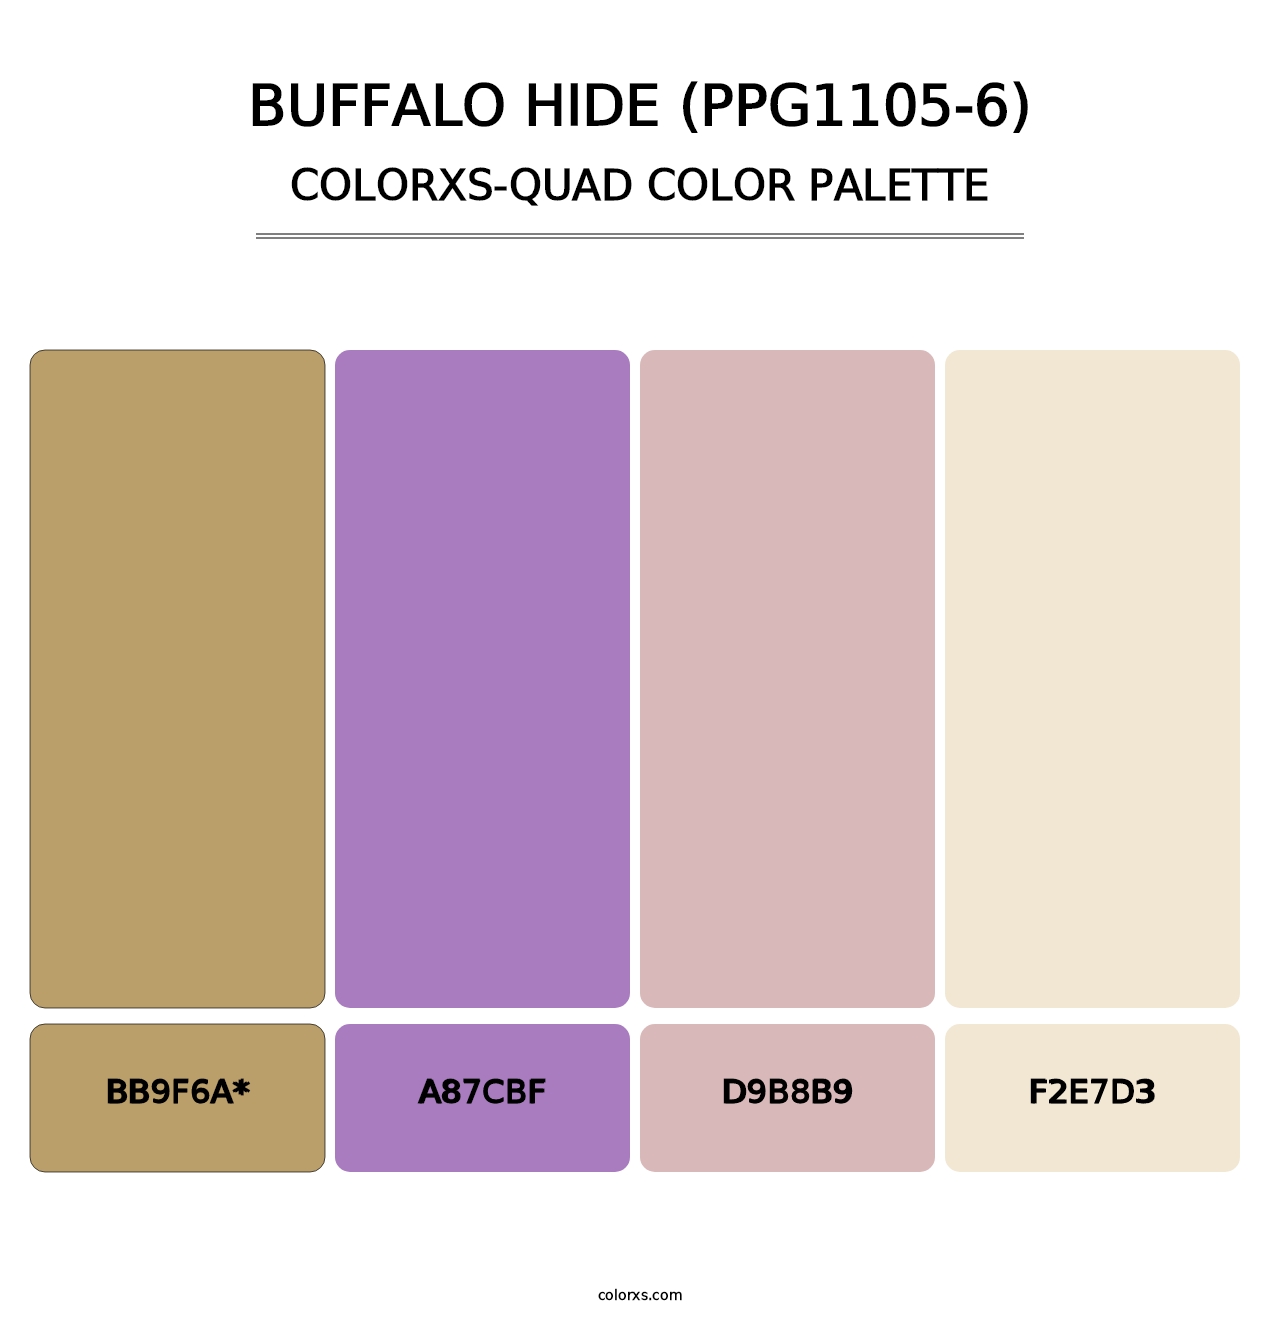 Buffalo Hide (PPG1105-6) - Colorxs Quad Palette